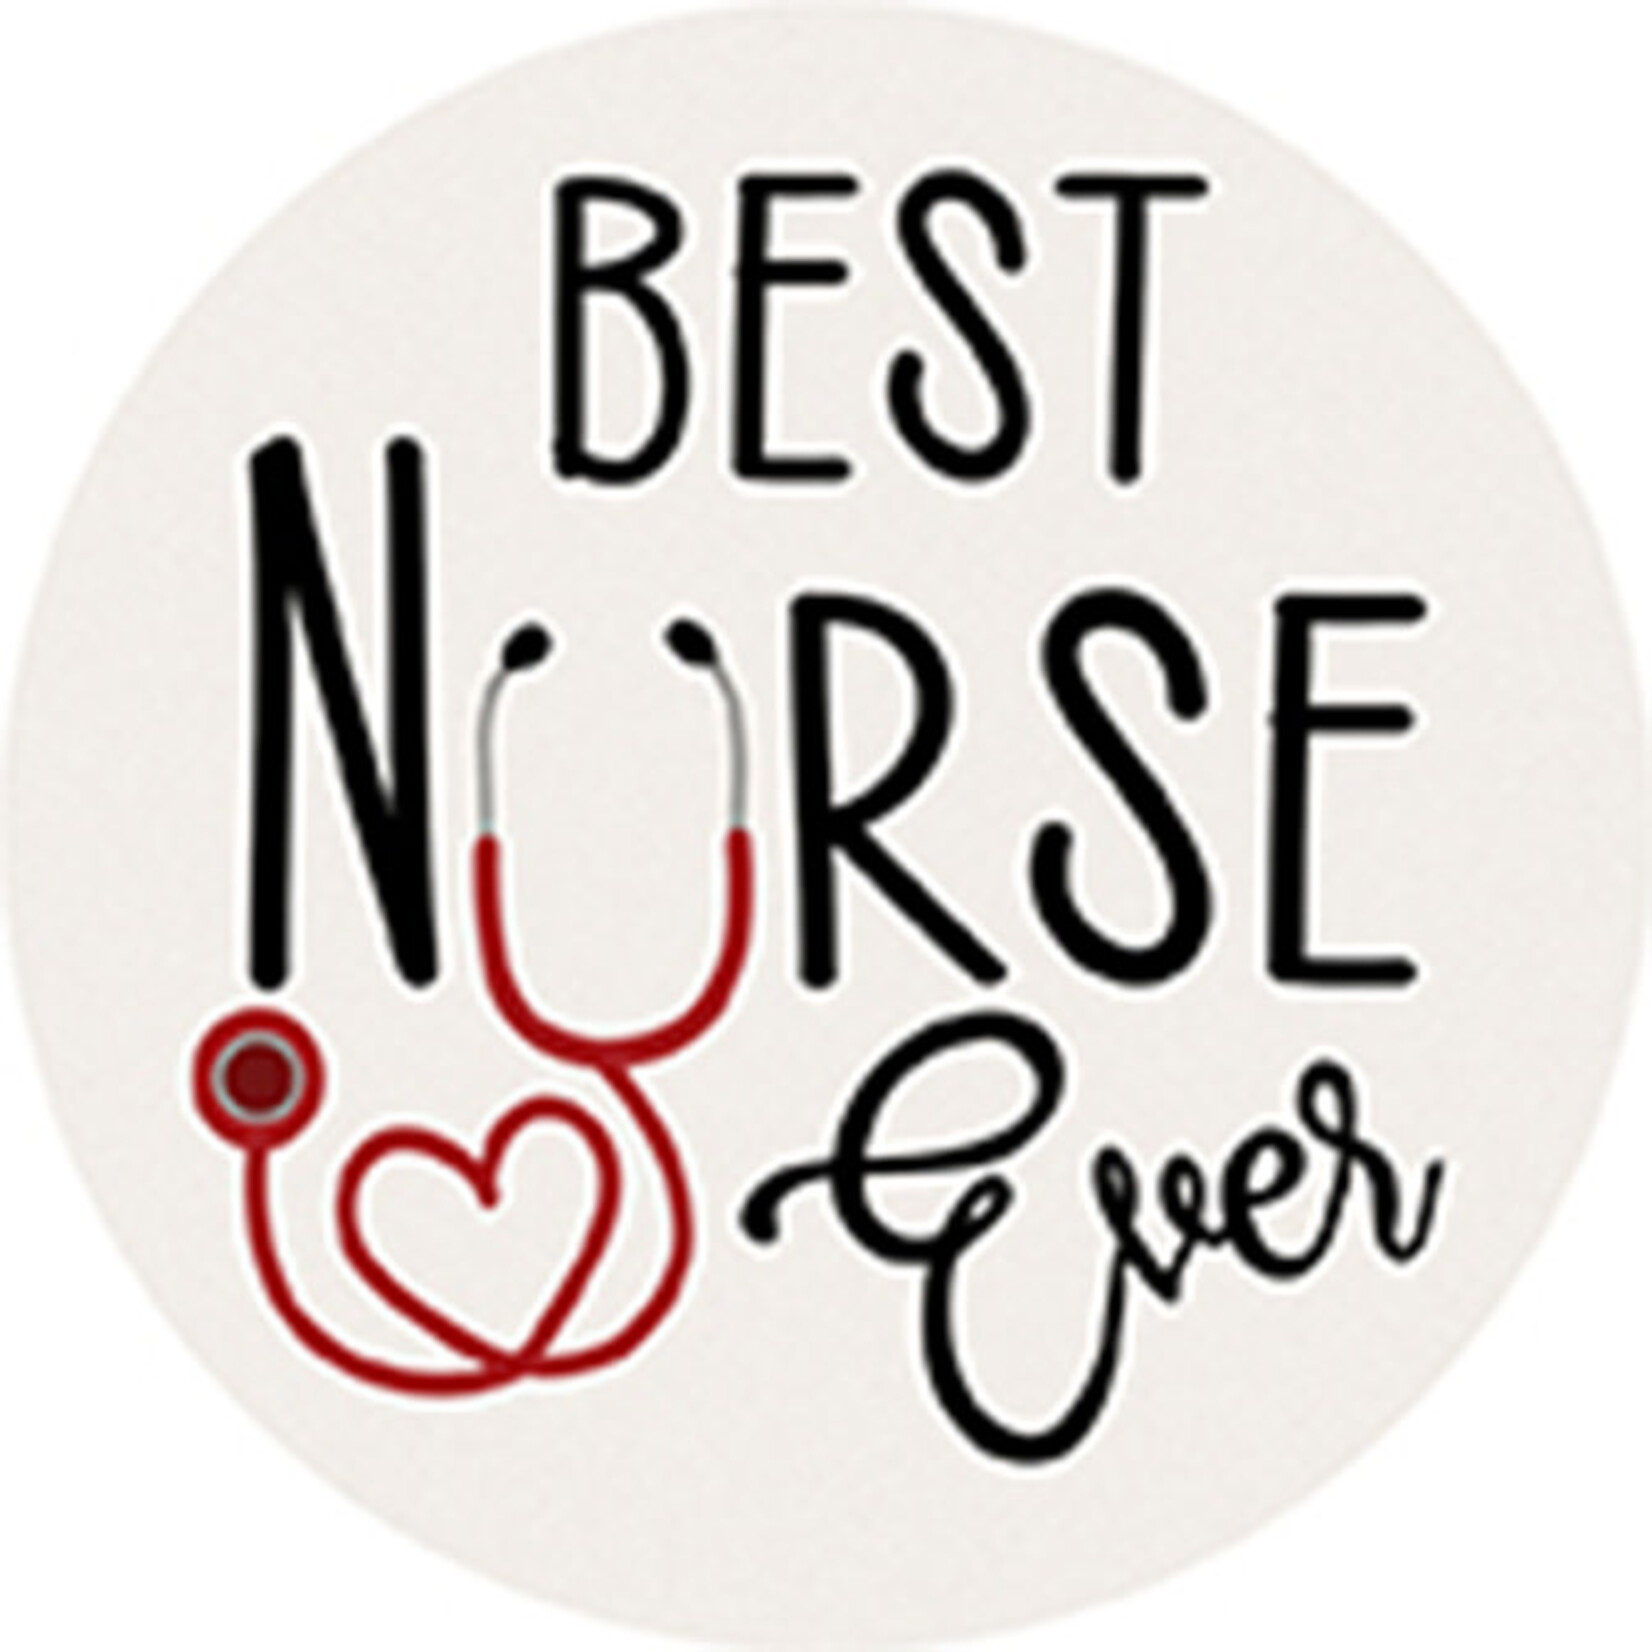 "Best Nurse Ever" Round Car Coaster